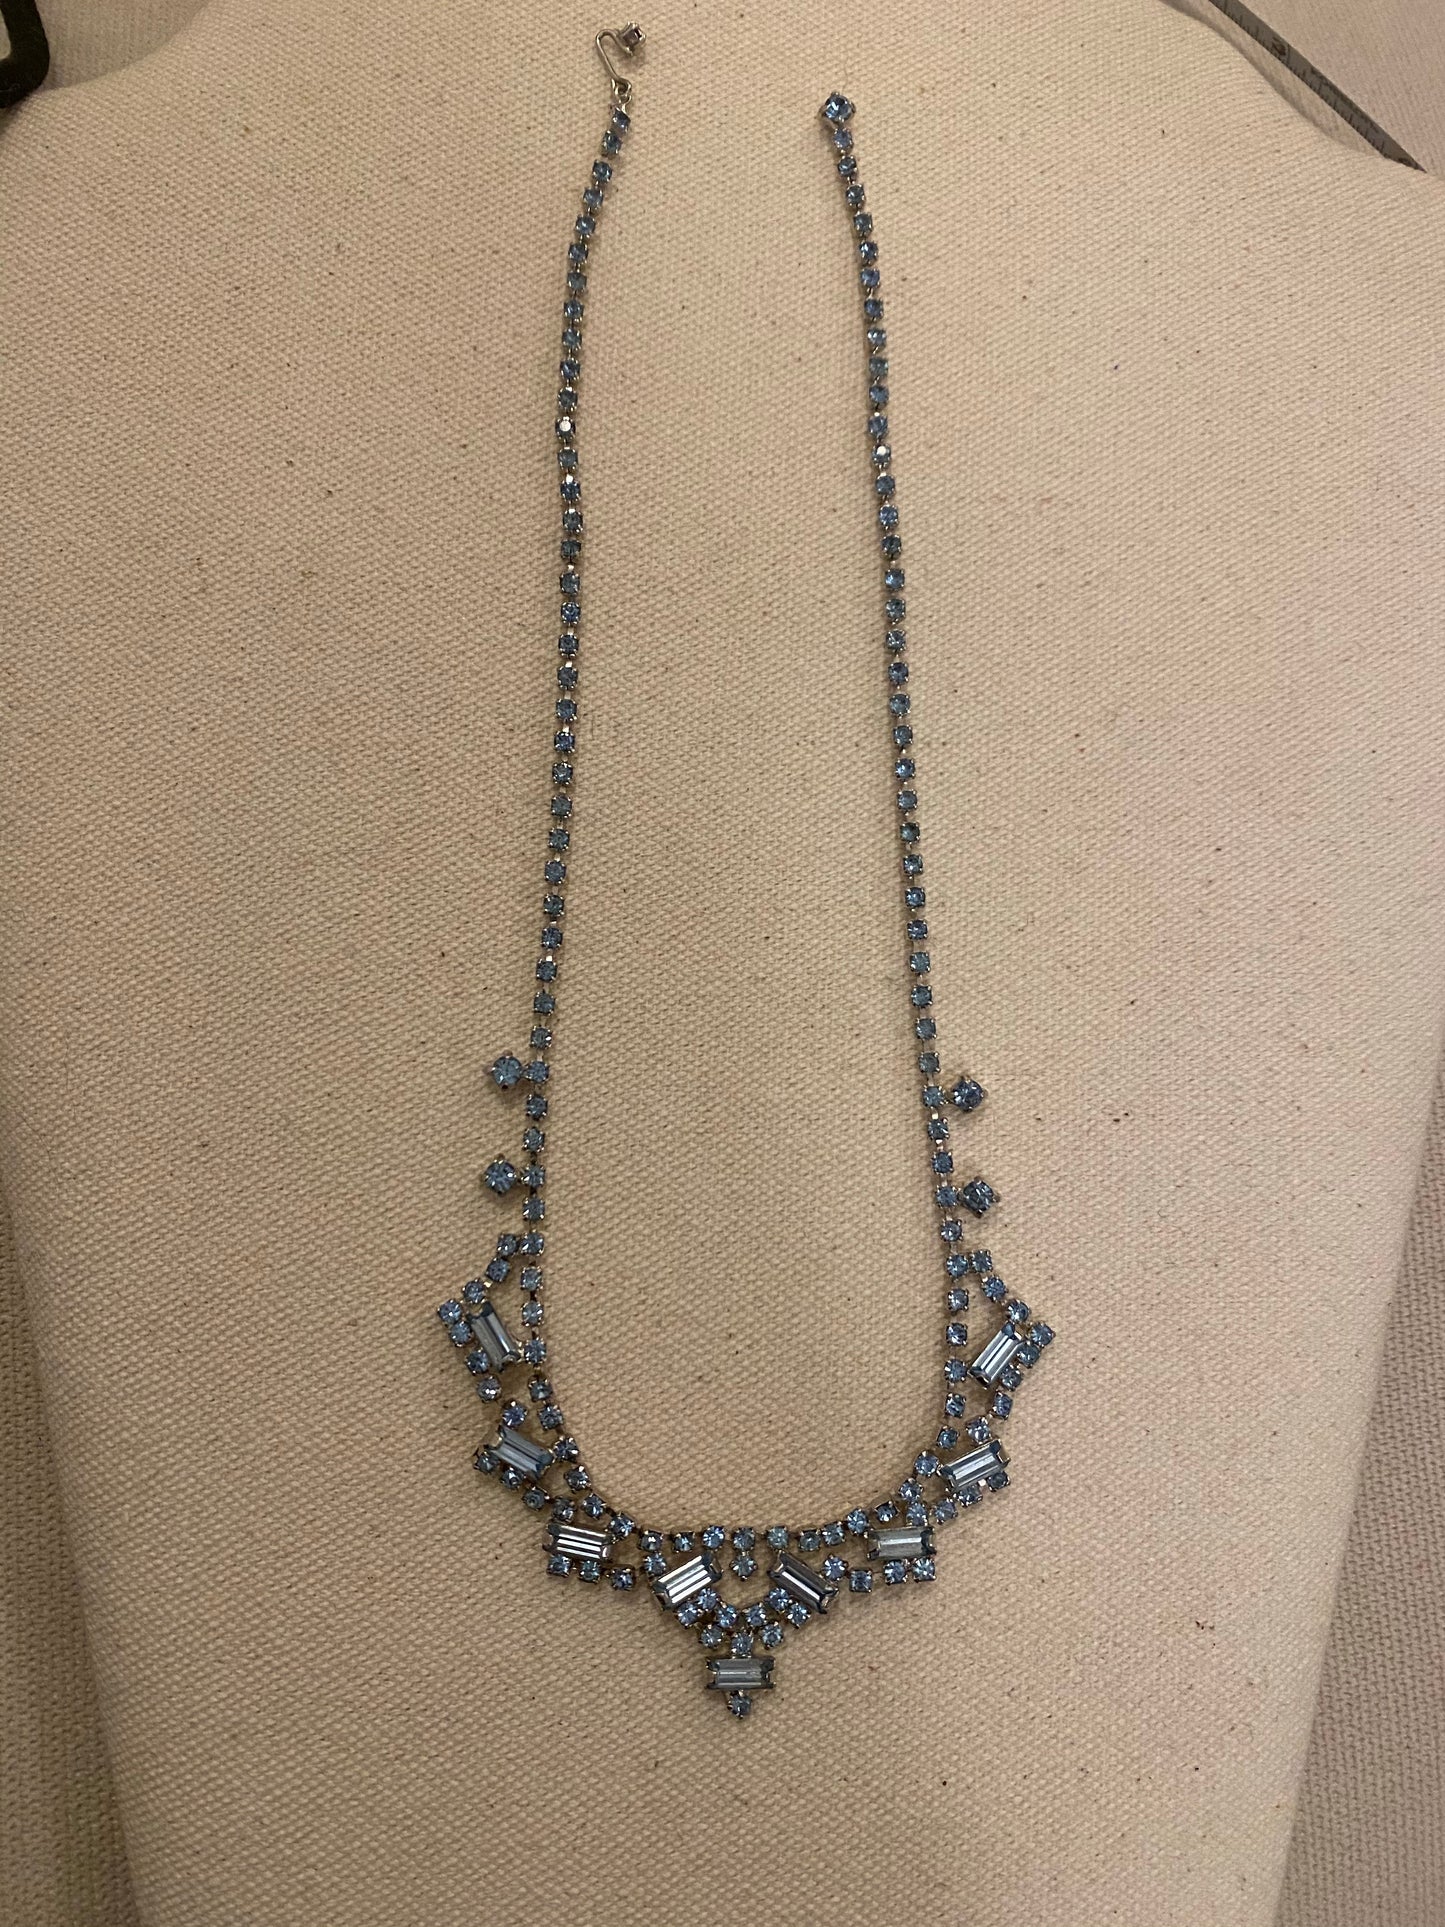 Blue emerald cut diamond necklace, 1950’s